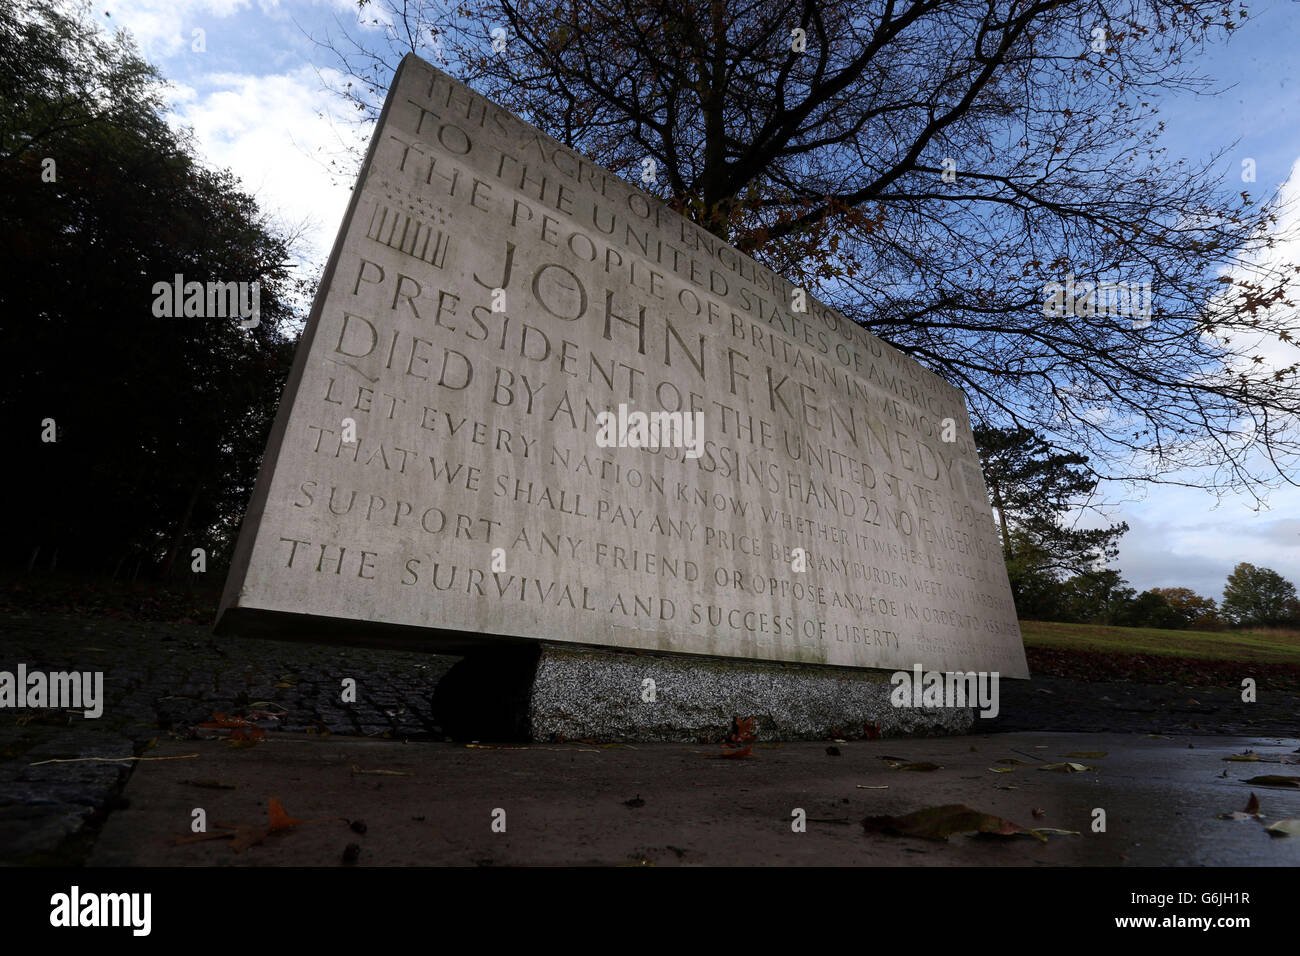 Das Denkmal für den ehemaligen US-Präsidenten John Kennedy in Runnymede bei Egham, Surrey. Während die Welt den 50. Jahrestag des Todes von JFK feiert, wird die britische gedenkfeier im Mittelpunkt einer einfachen Kranzniederlegung am britischen Denkmal stehen, das dem Präsidenten gewidmet ist. Stockfoto